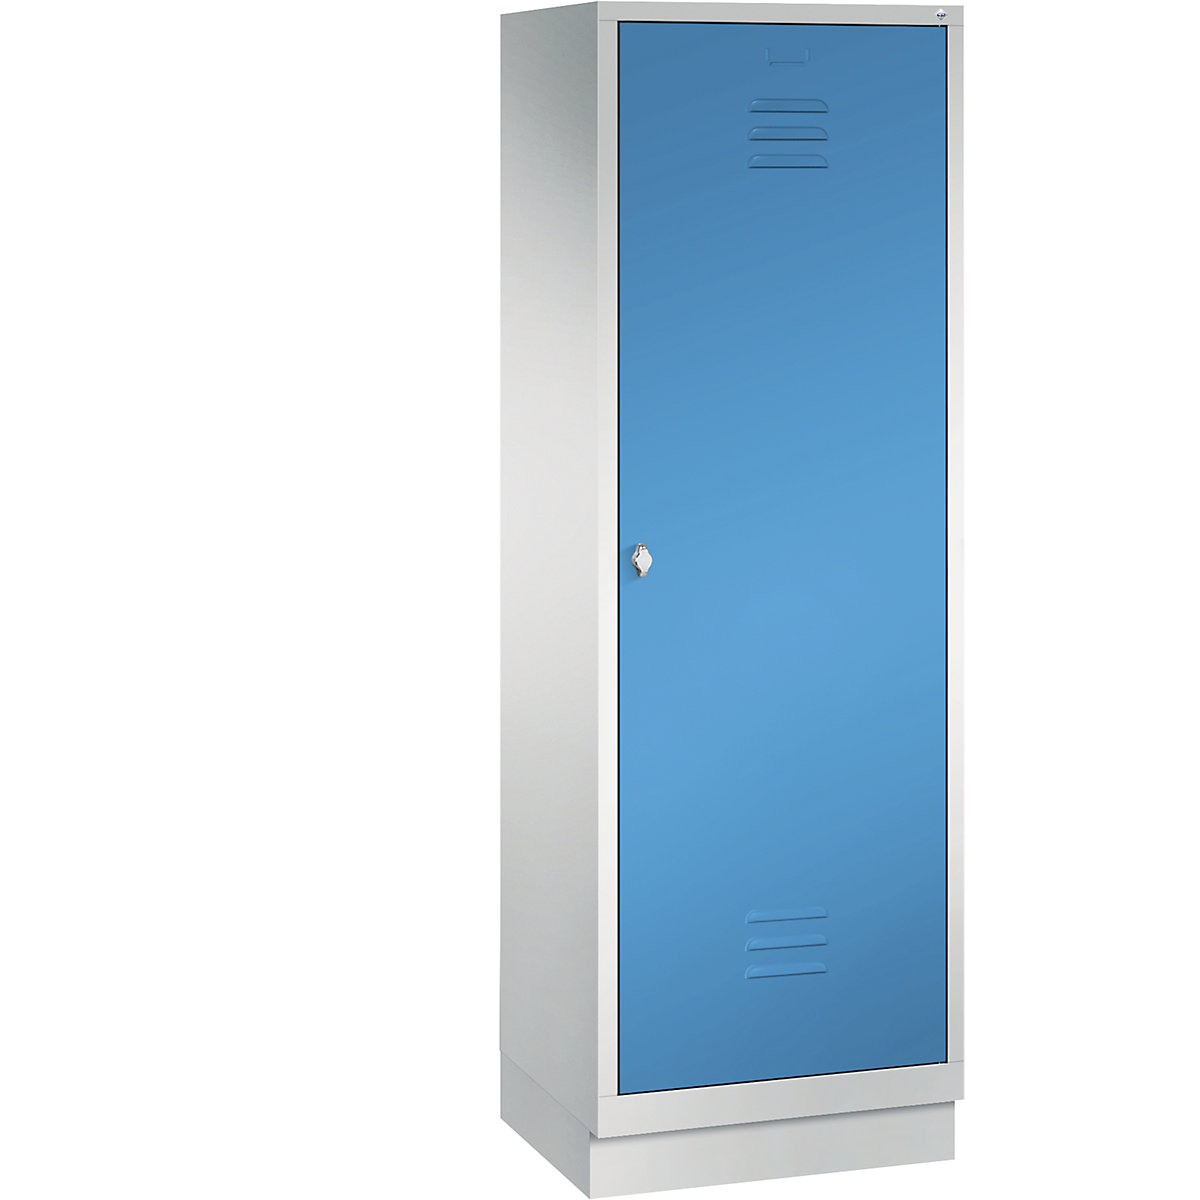 Šatní skříň se soklem CLASSIC s dveřmi přes 2 oddíly – C+P, 2 oddíly, šířka oddílu 300 mm, světlá šedá / světlá modrá